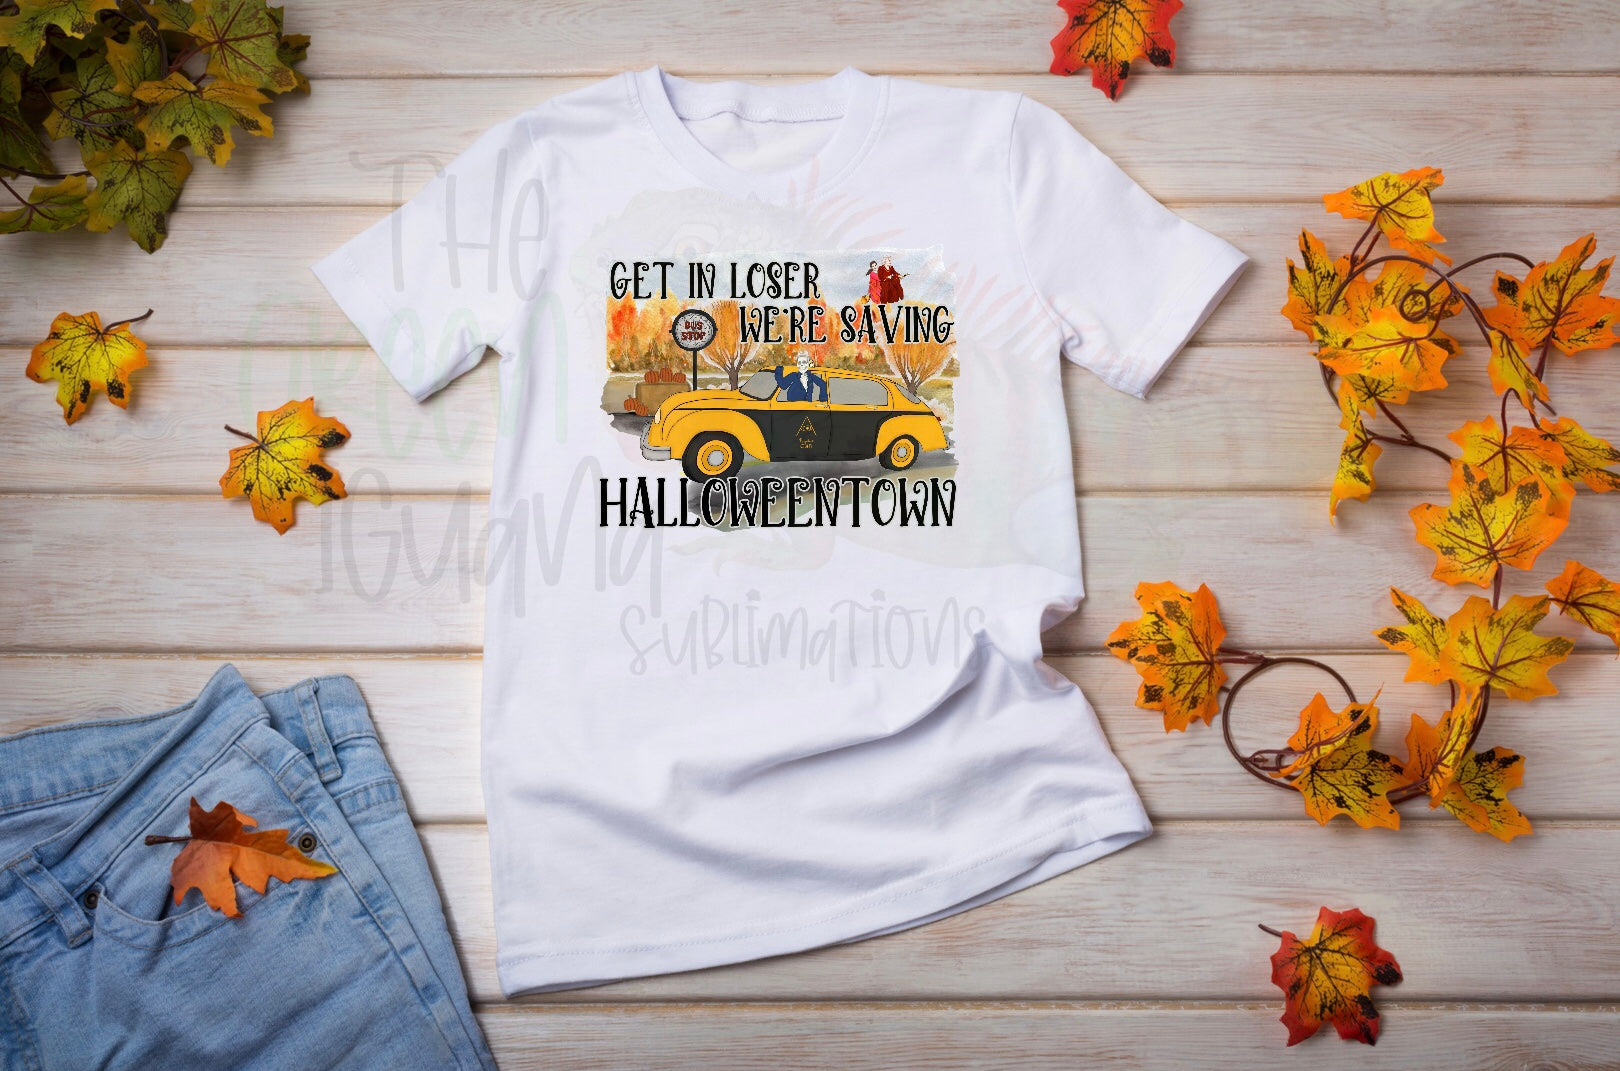 Get in loser. We’re saving Halloweentown